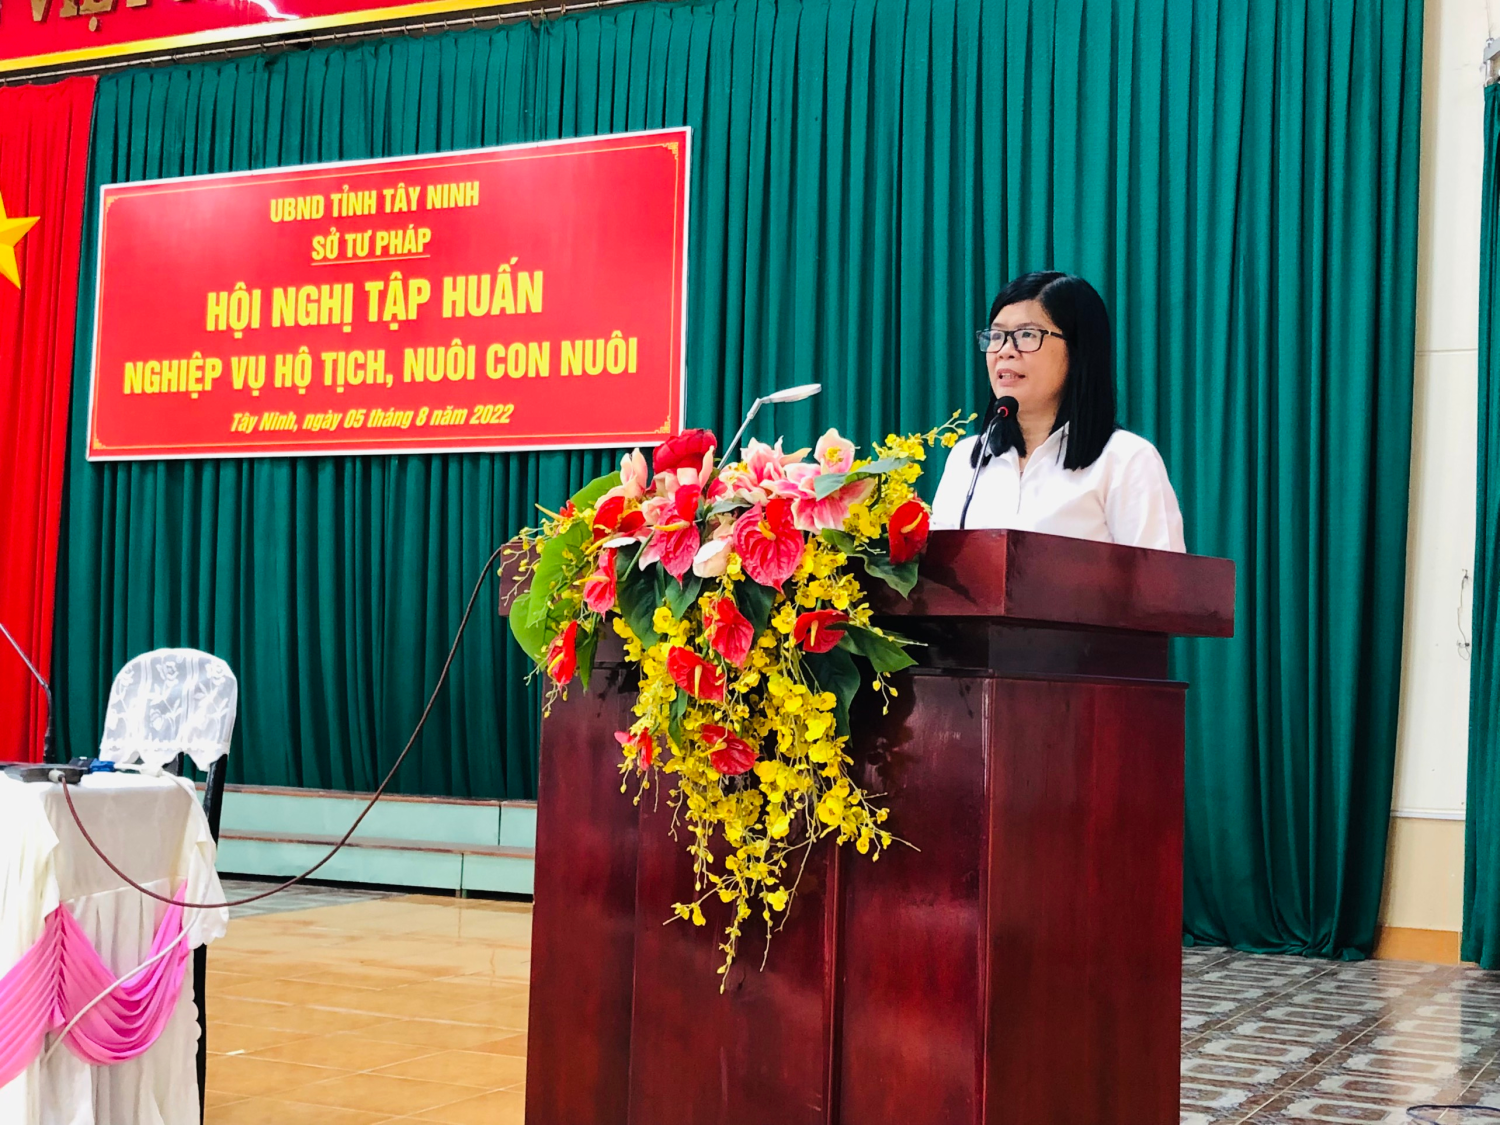 Sở Tư pháp tỉnh Tây Ninh tổ chức Hội nghị tập huấn nghiệp vụ công tác hộ tịch và nuôi con nuôi năm 2022